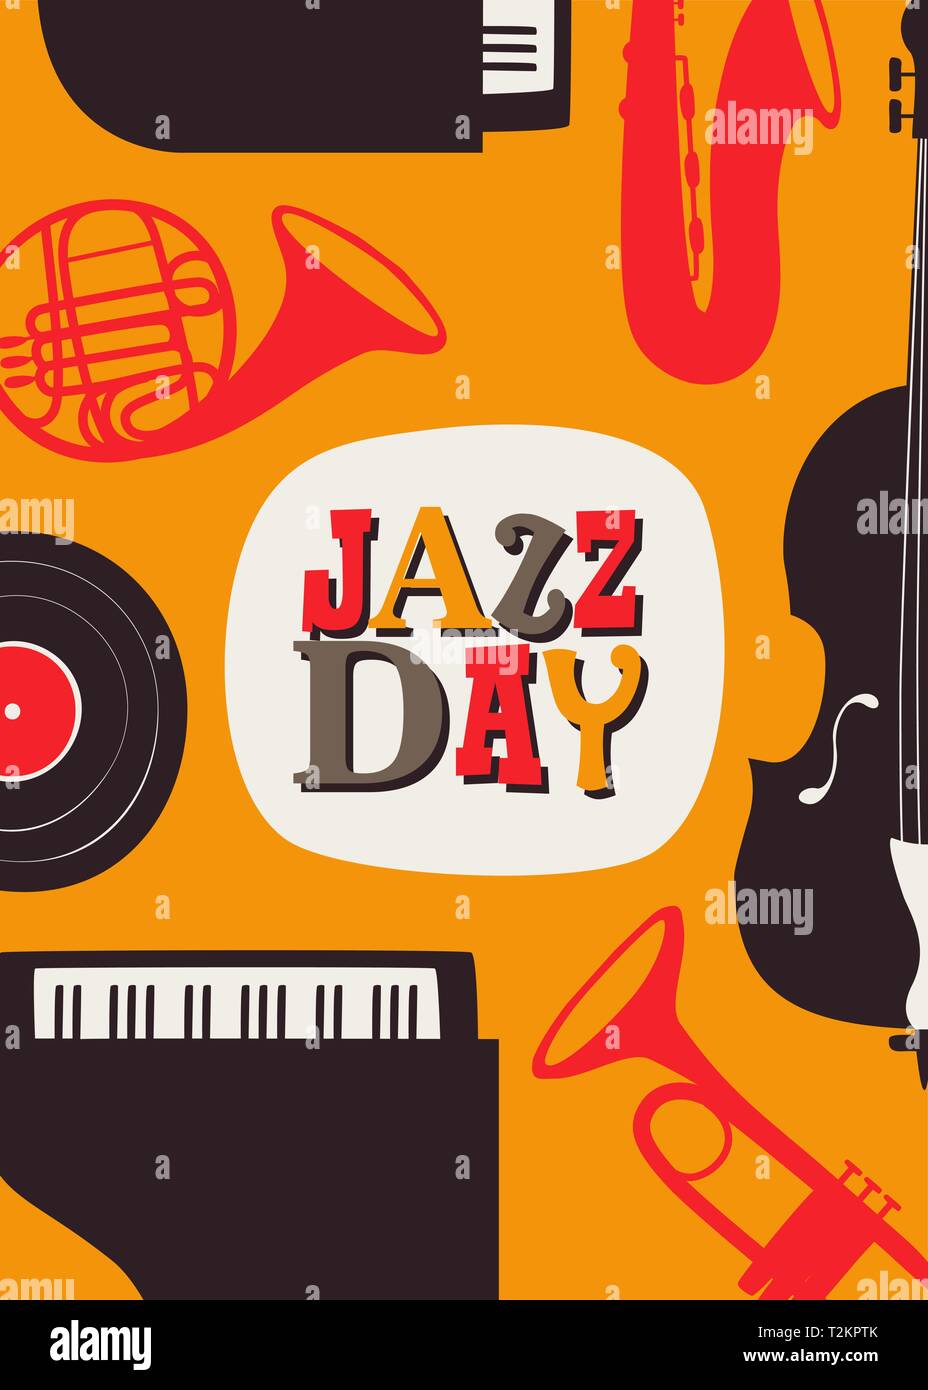 Jazz Day: Hôm nay là ngày Jazz - một loại nhạc được yêu thích và đa dạng. Thưởng thức nhạc Jazz không chỉ là cảm giác vui vẻ, mà còn giúp bạn thư giãn và hưởng thụ âm nhạc trong không gian đậm chất thăng hoa. Xem hình liên quan để cảm nhận sự phong phú của dòng nhạc này.